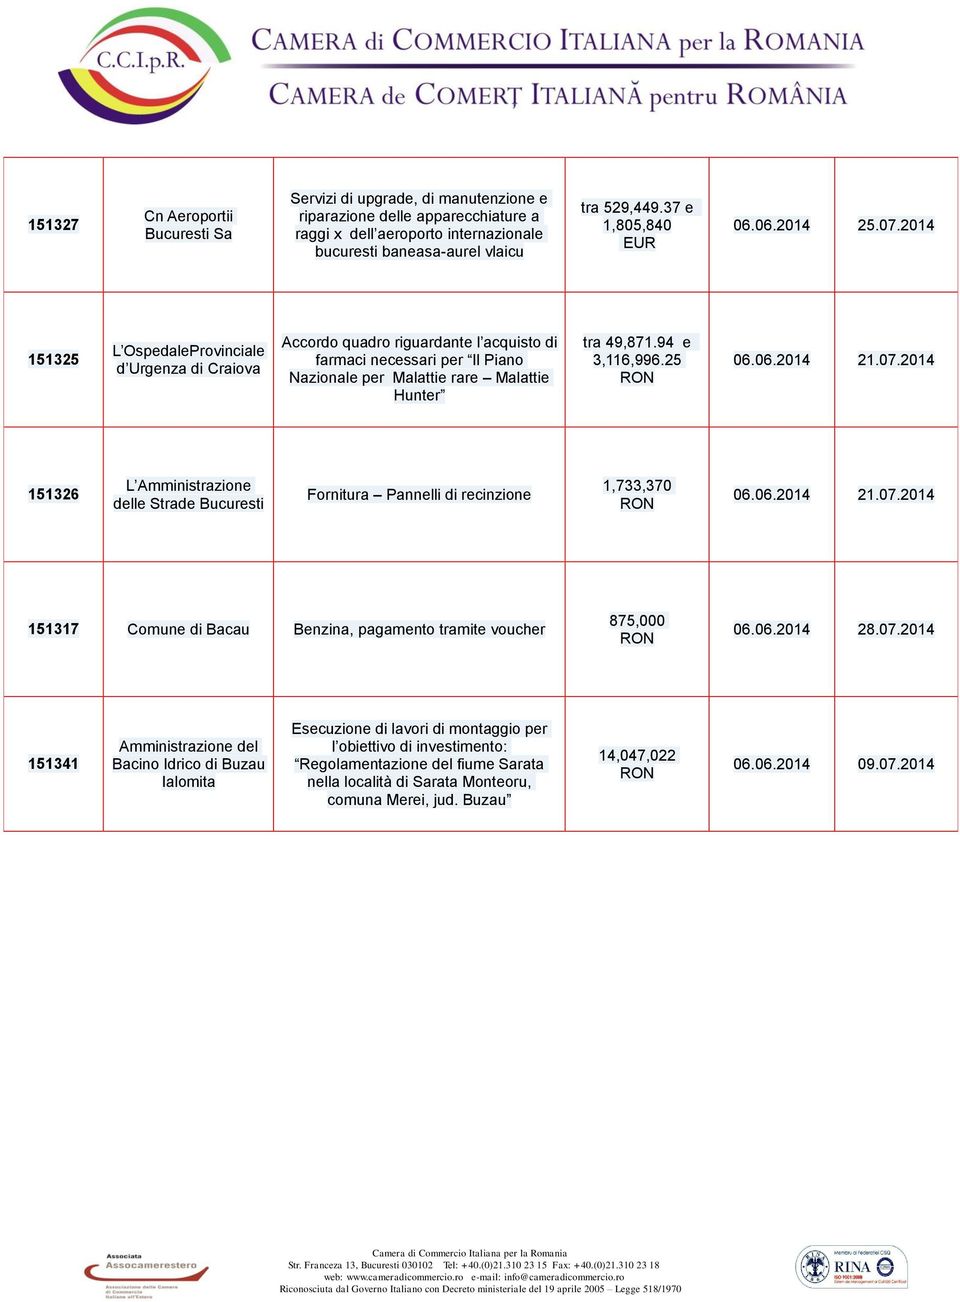 2014 151325 L OspedaleProvinciale d Urgenza di Craiova Accordo quadro riguardante l acquisto di farmaci necessari per Il Piano Nazionale per Malattie rare Malattie Hunter tra 49,871.94 e 3,116,996.